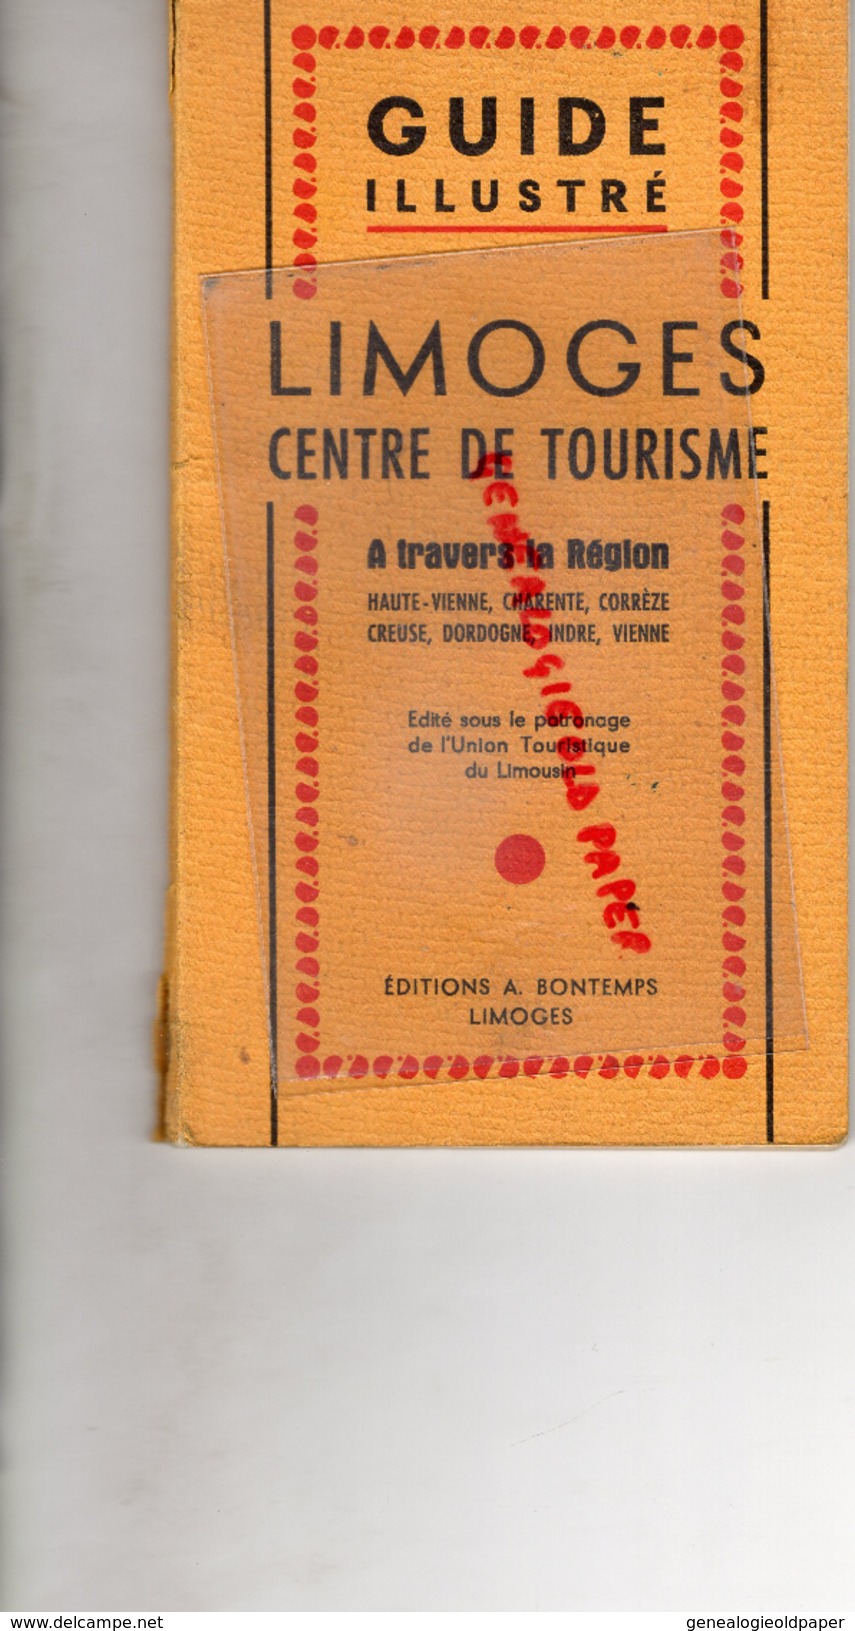 87 - LIMOGES A TRAVERS LA REGION - CREUSE -DORDOGNE-INDRE-VIENNE-CHARENTE- GUIDE ILLUSTRE ANNEES 50- EDITIONS BONTEMPS - Limousin